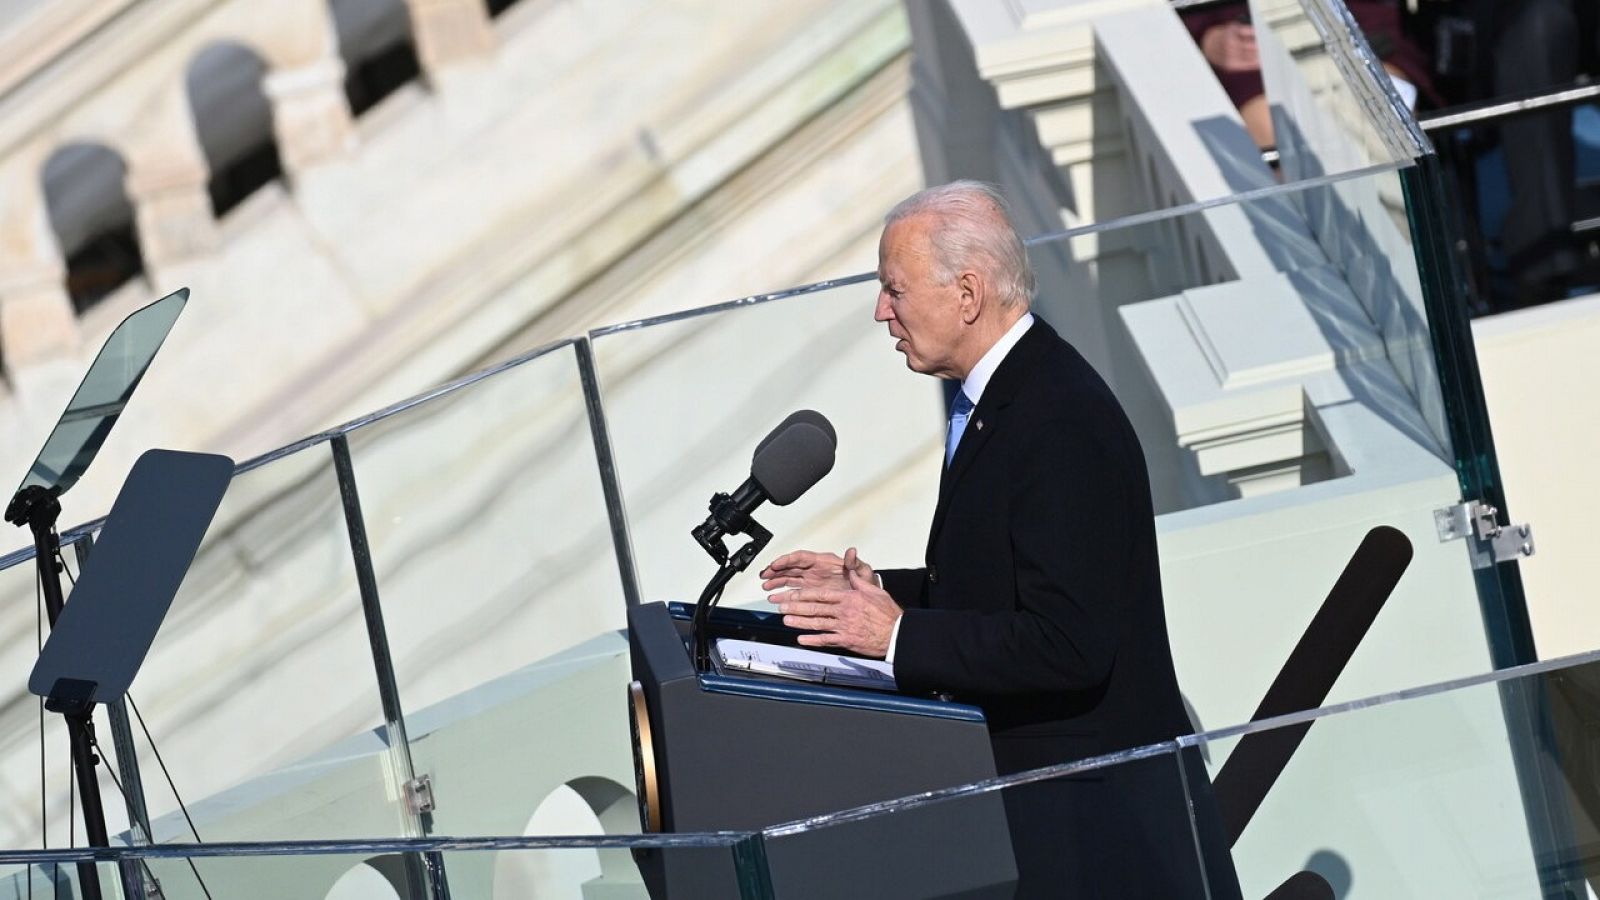 El discurso de Biden, tranquilizador y sin novedades: "Puede que aburrido sea justo lo que el pas necesita"